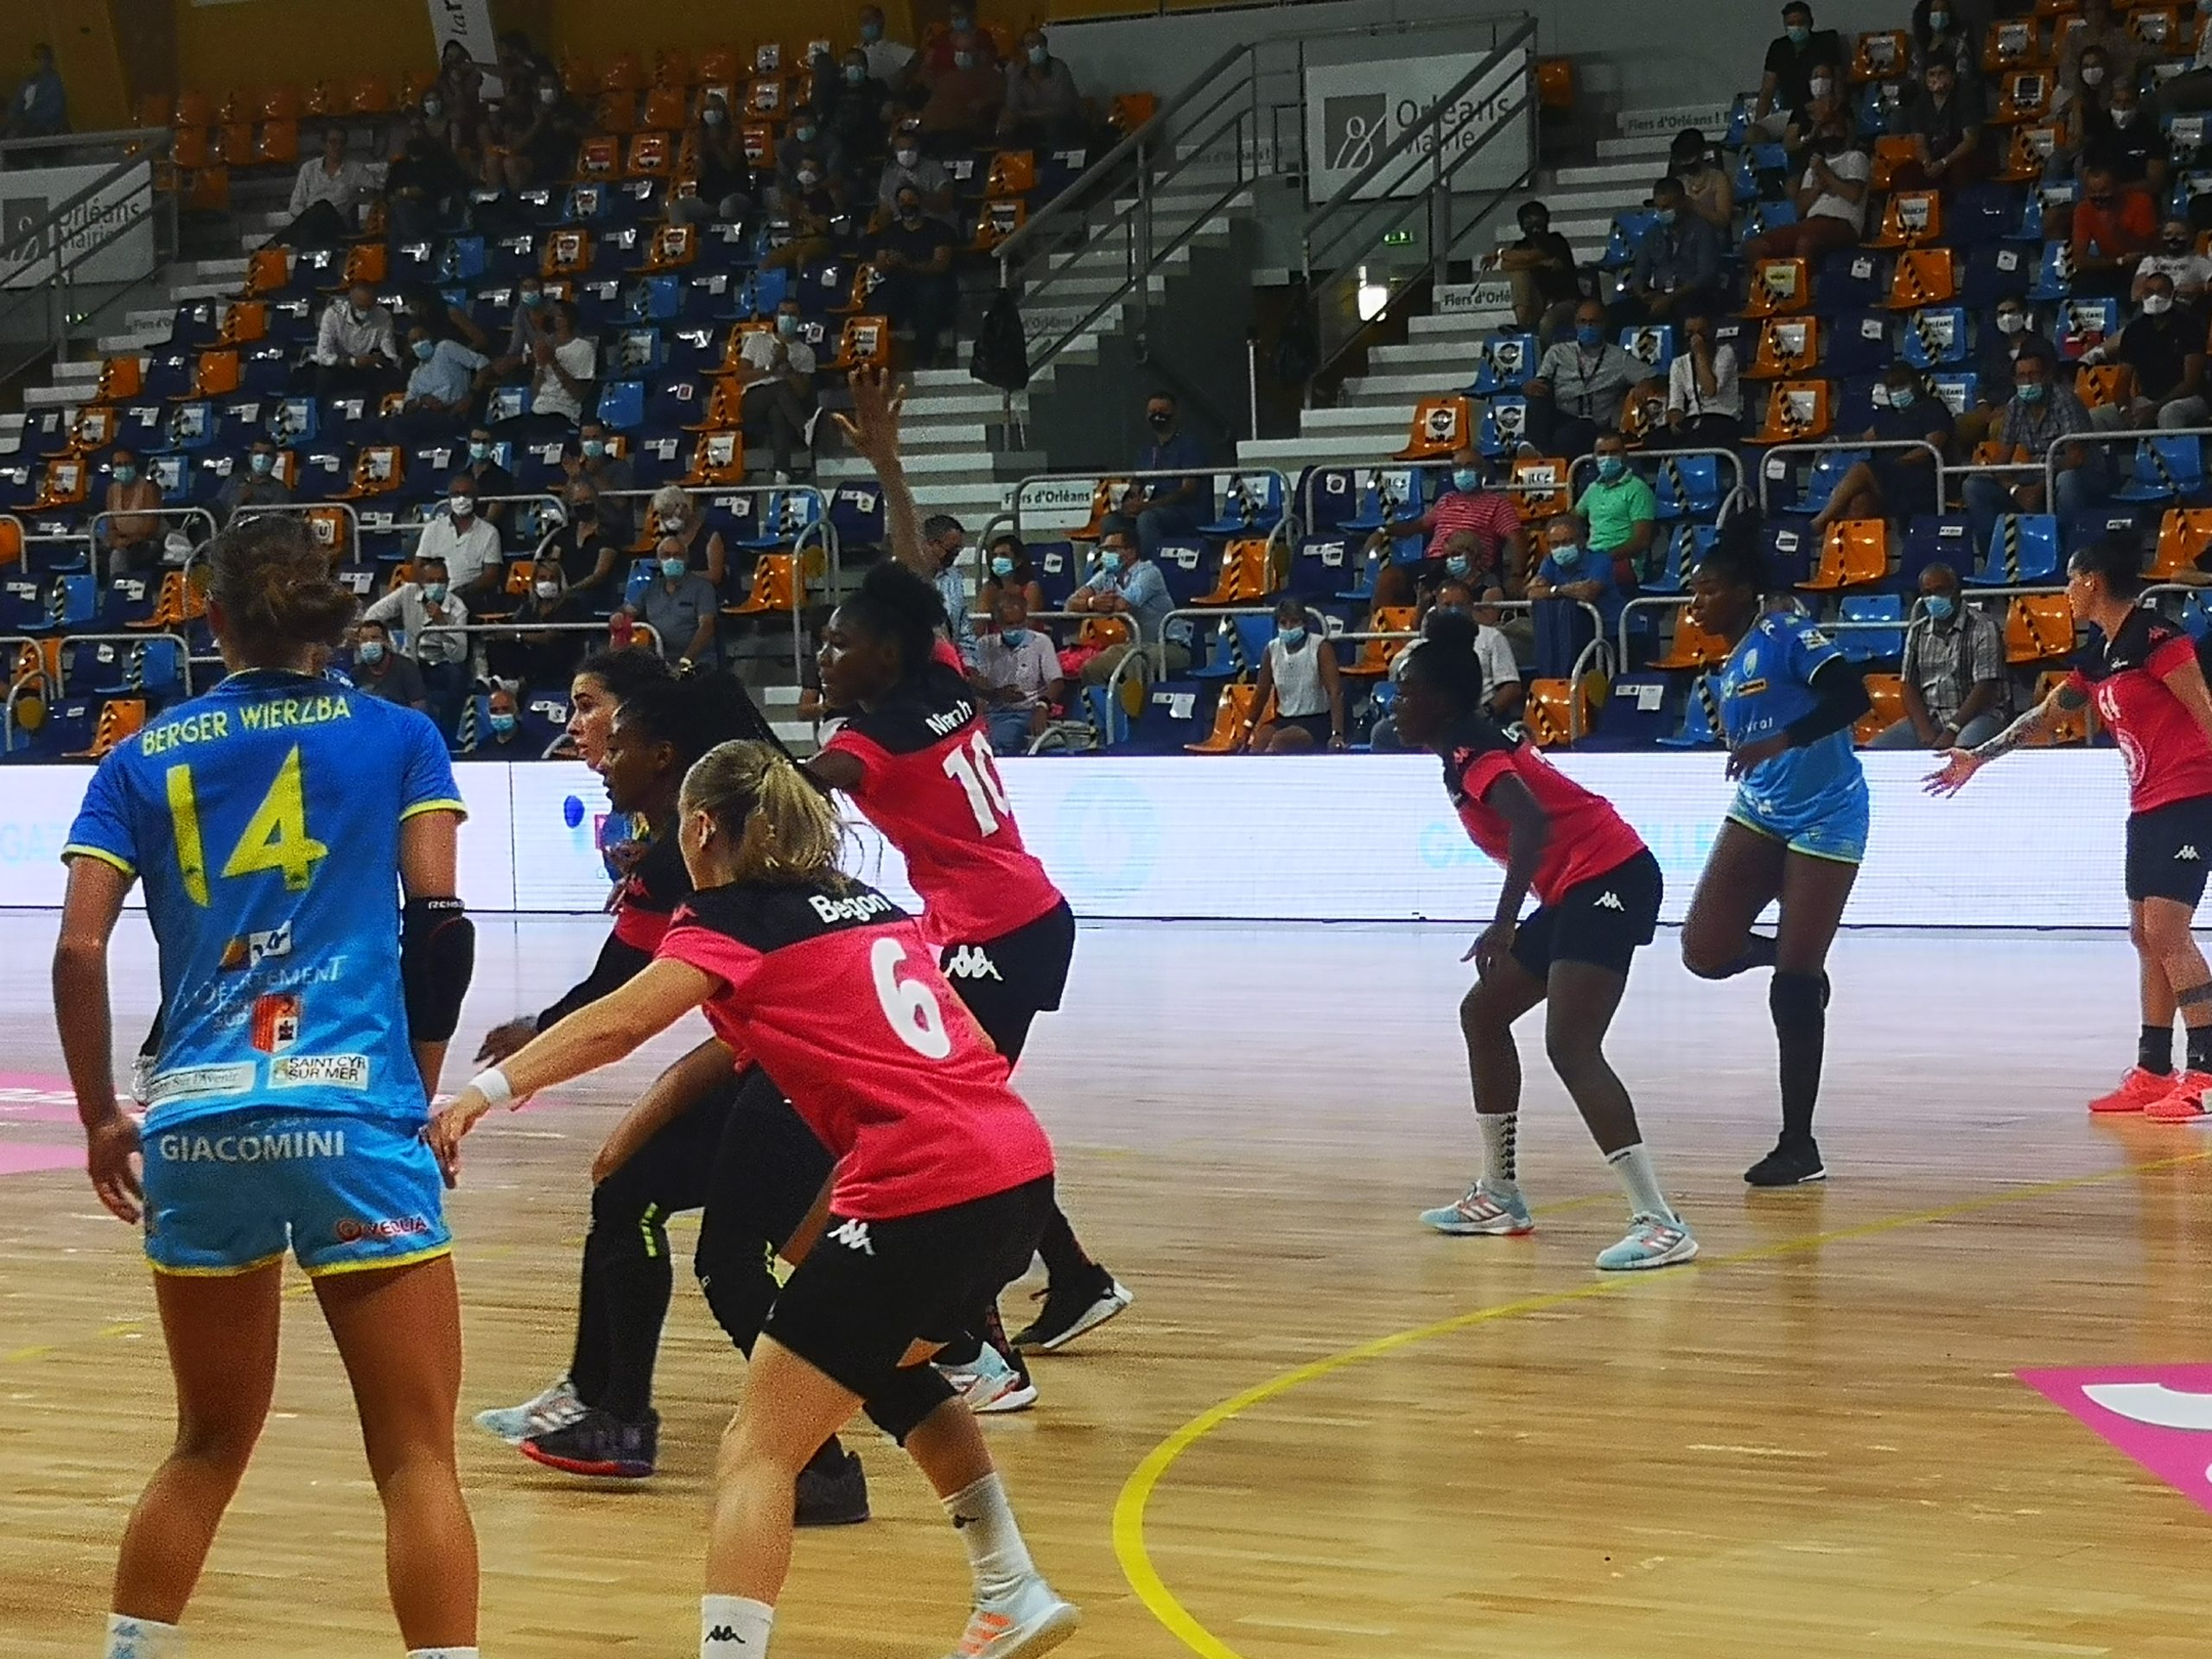 les panthères fleury handball sport féminin orléans